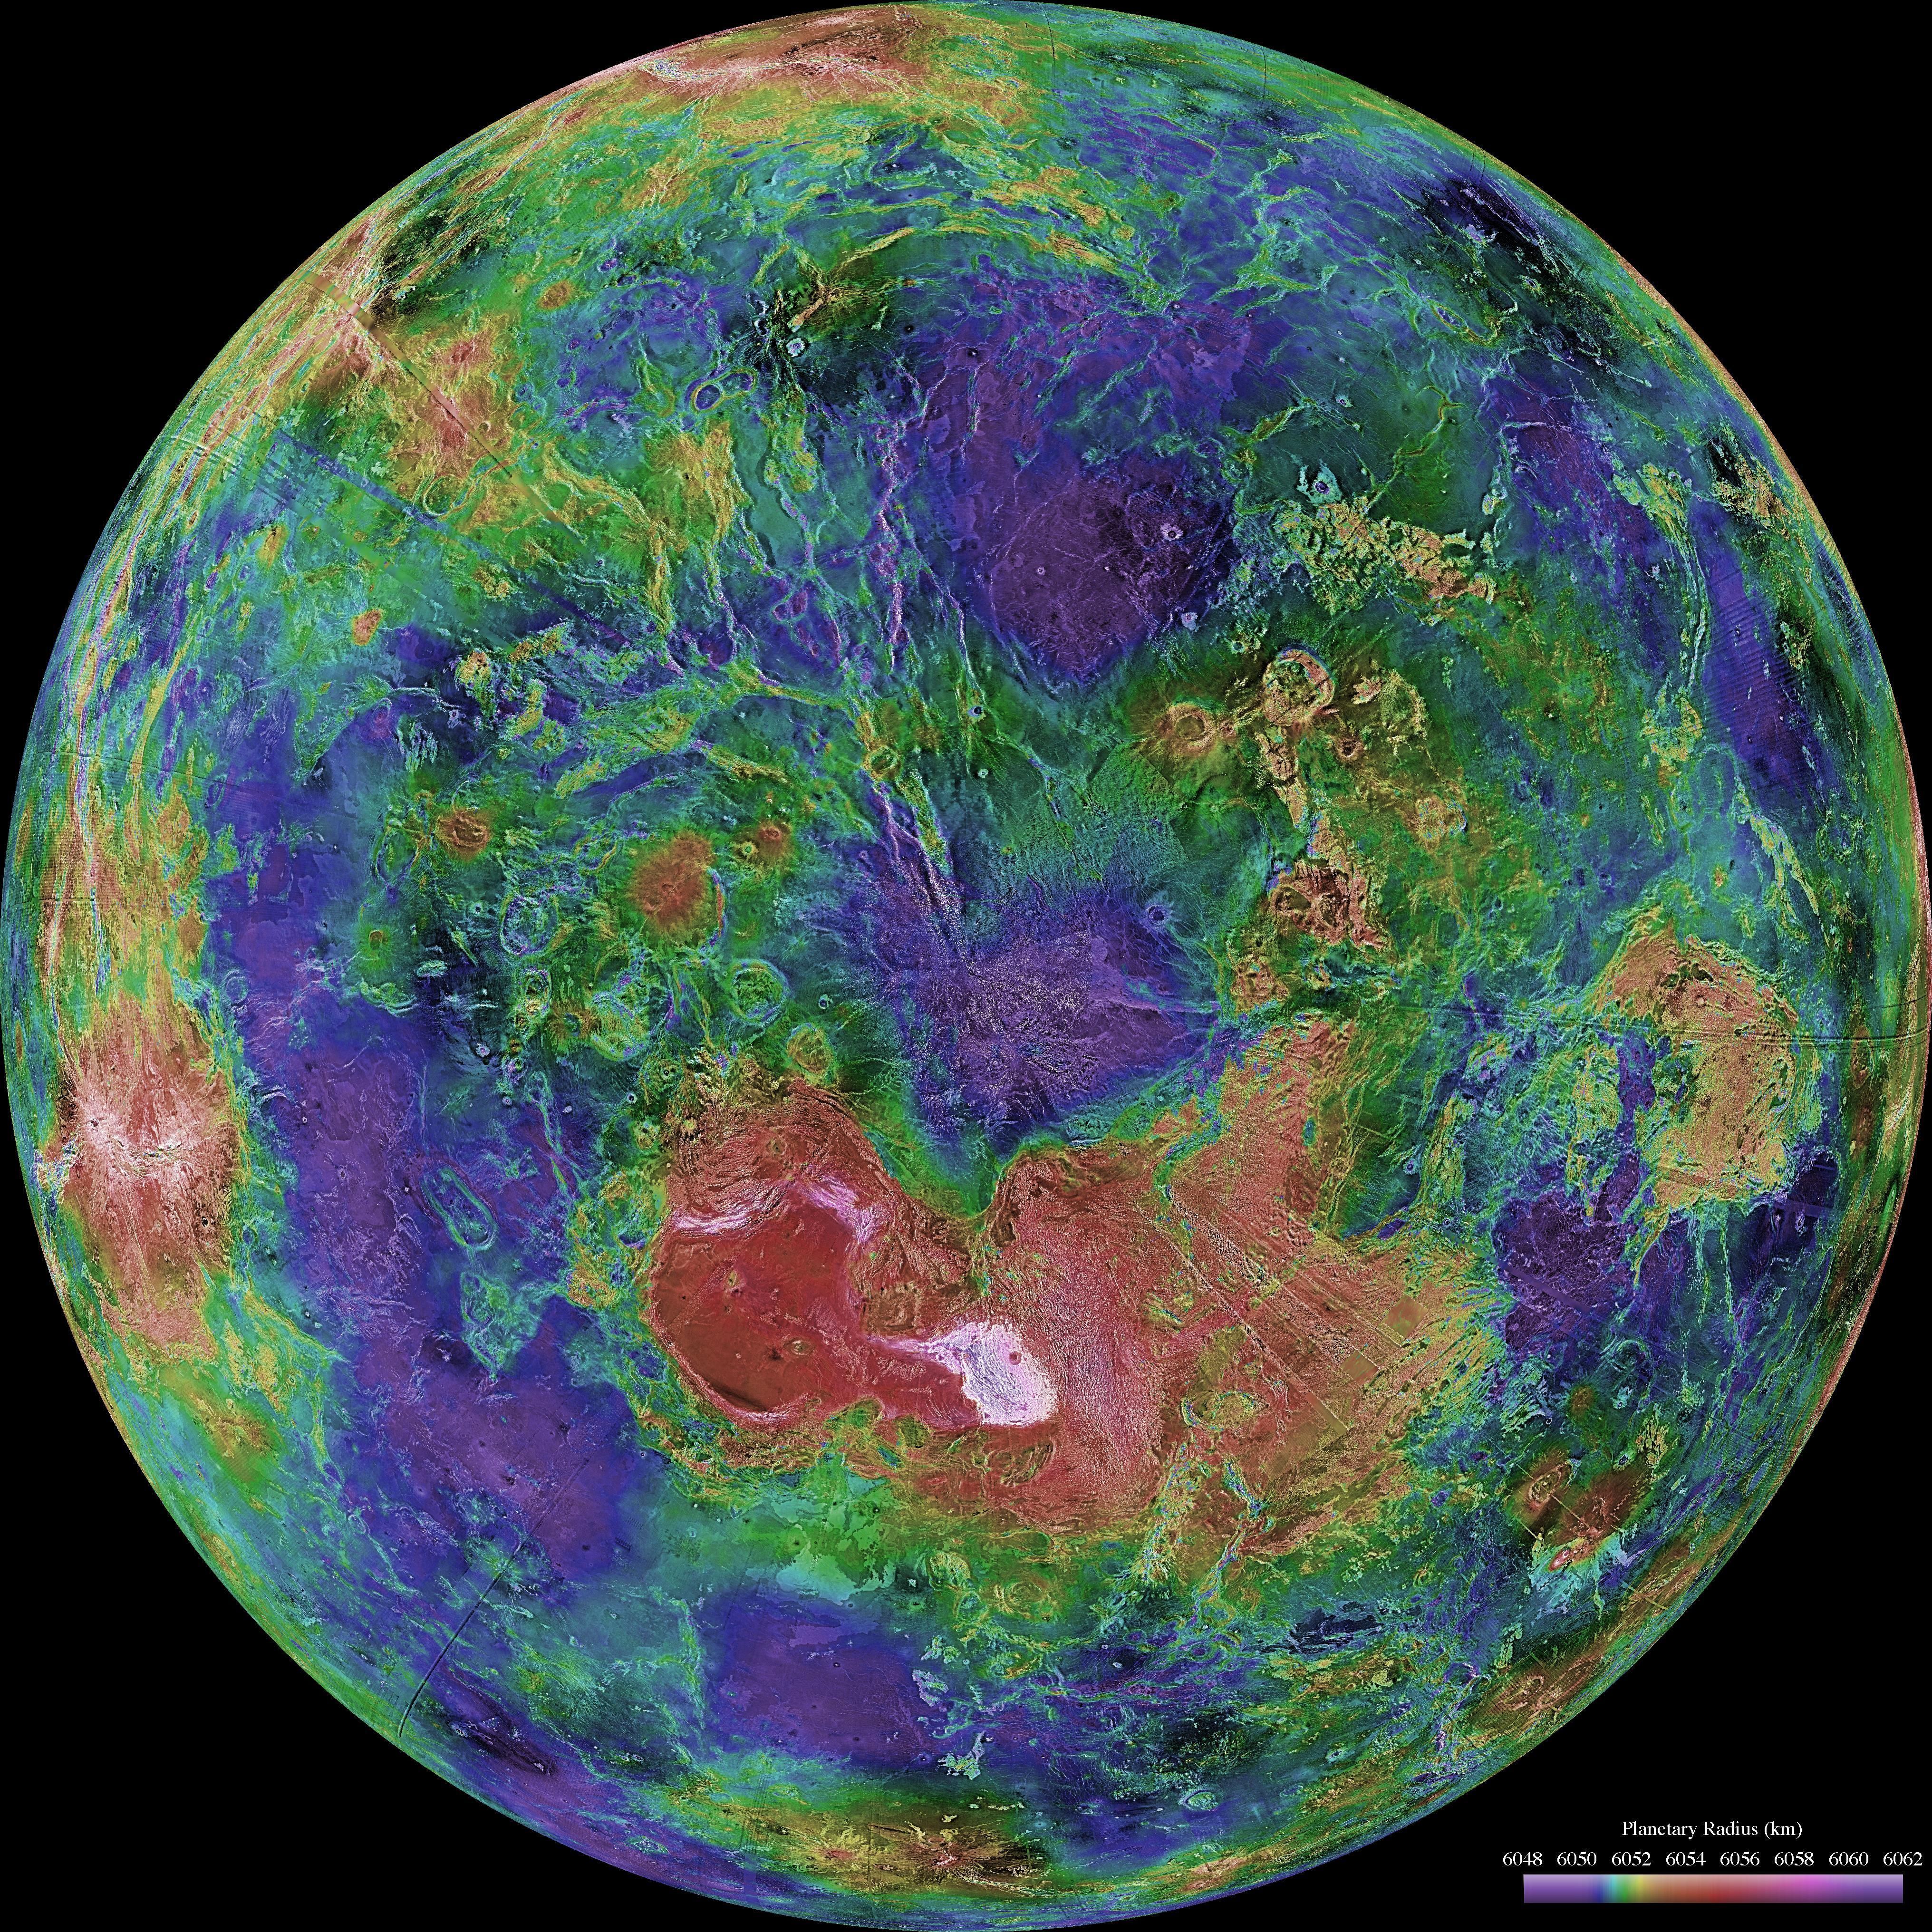 تصویر حرارتی با رنگ های مختلف و درجه بندی شده از سیاره زهره